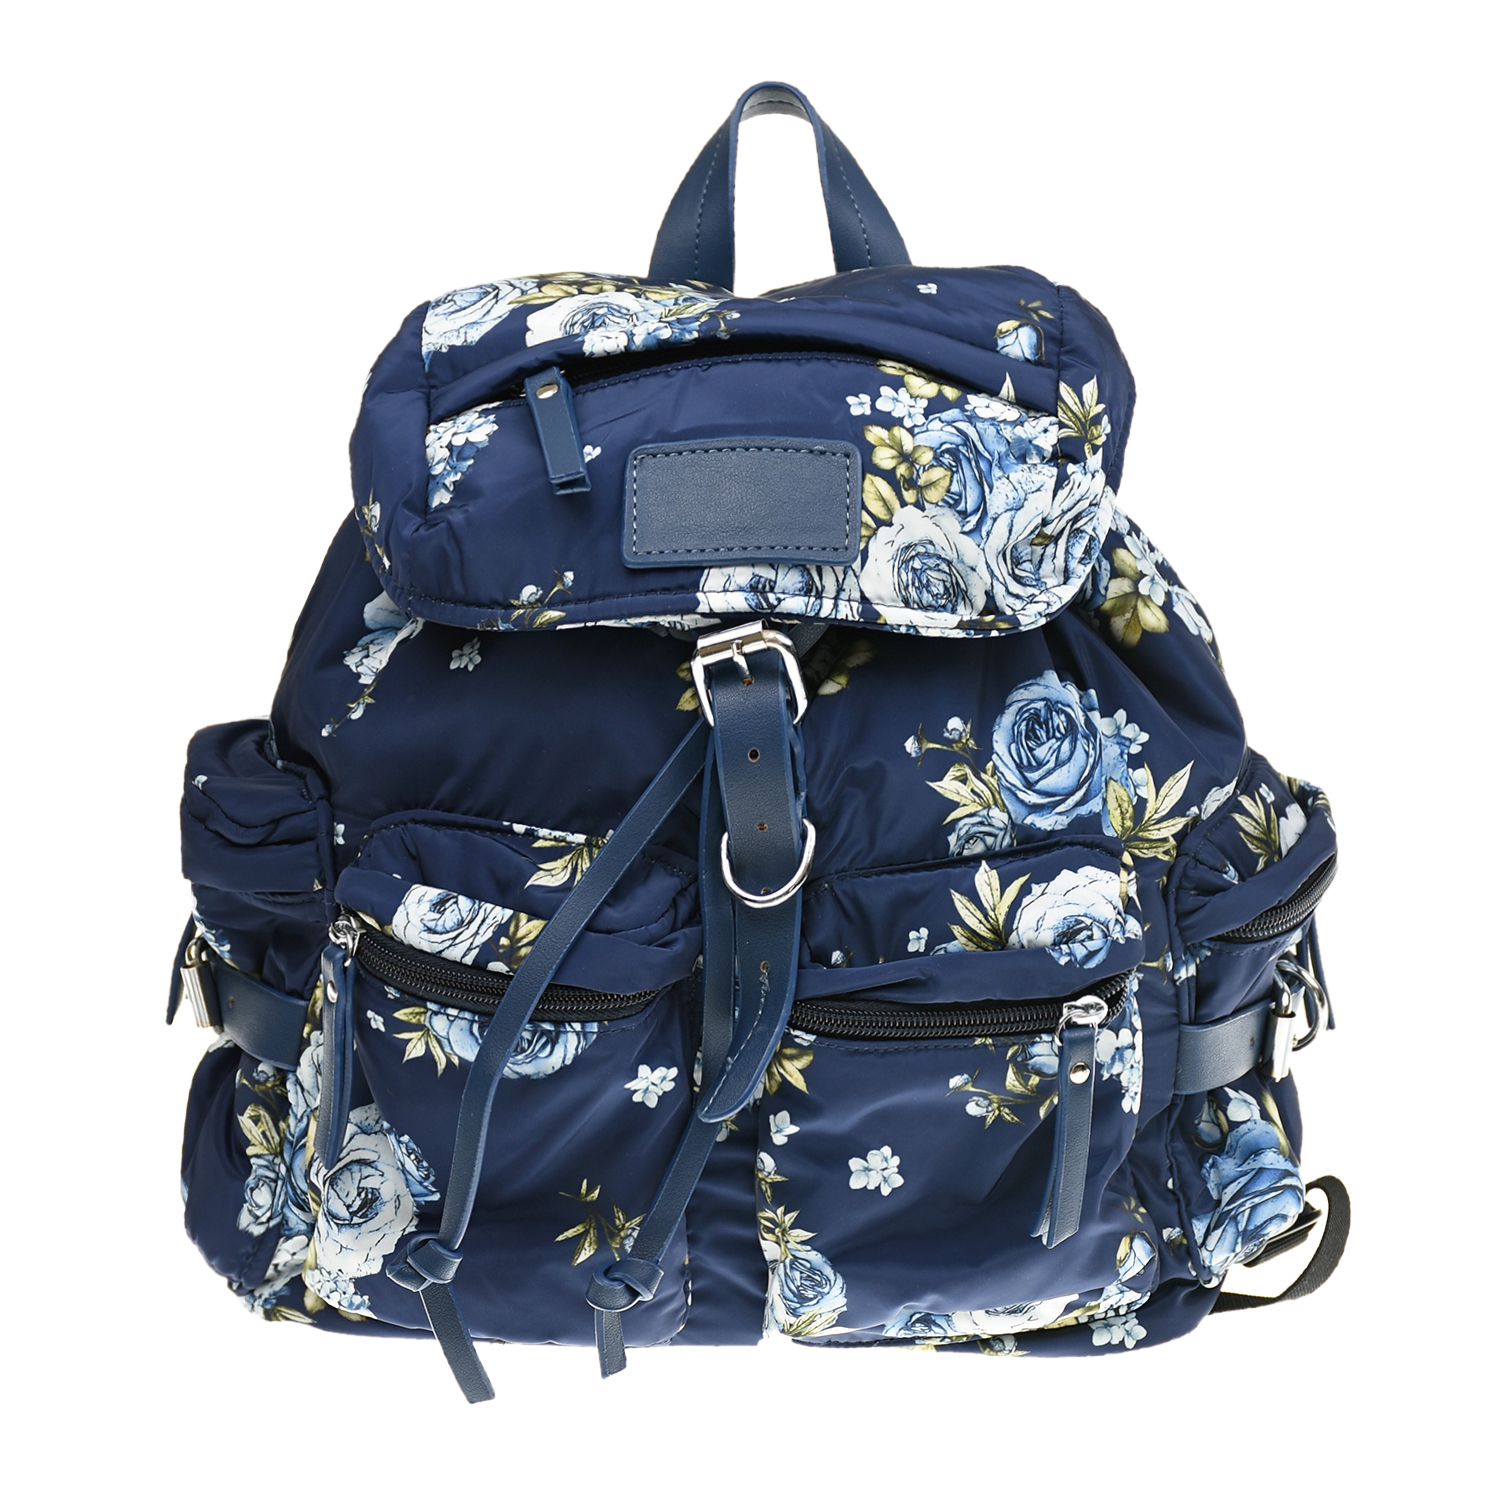 Синий рюкзак с цветочным принтом Monnalisa детский, размер unica - фото 1